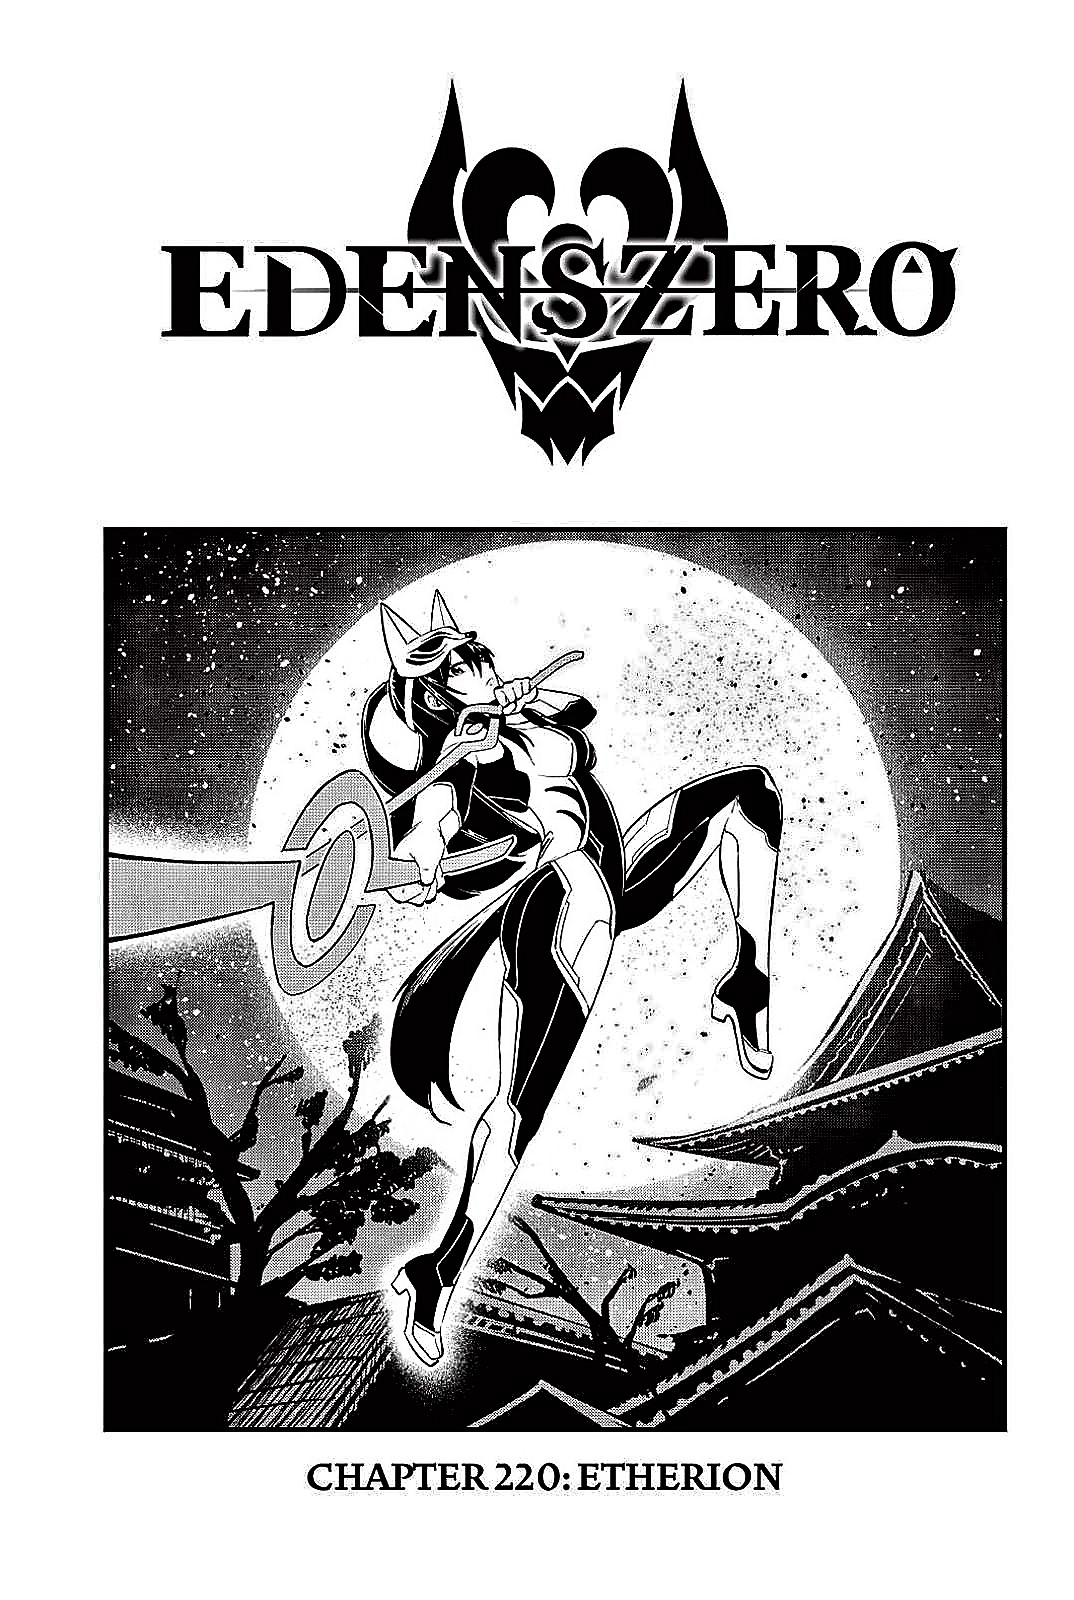 Activate: Etherion! Edens Zero Chapter 220 BREAKDOWN